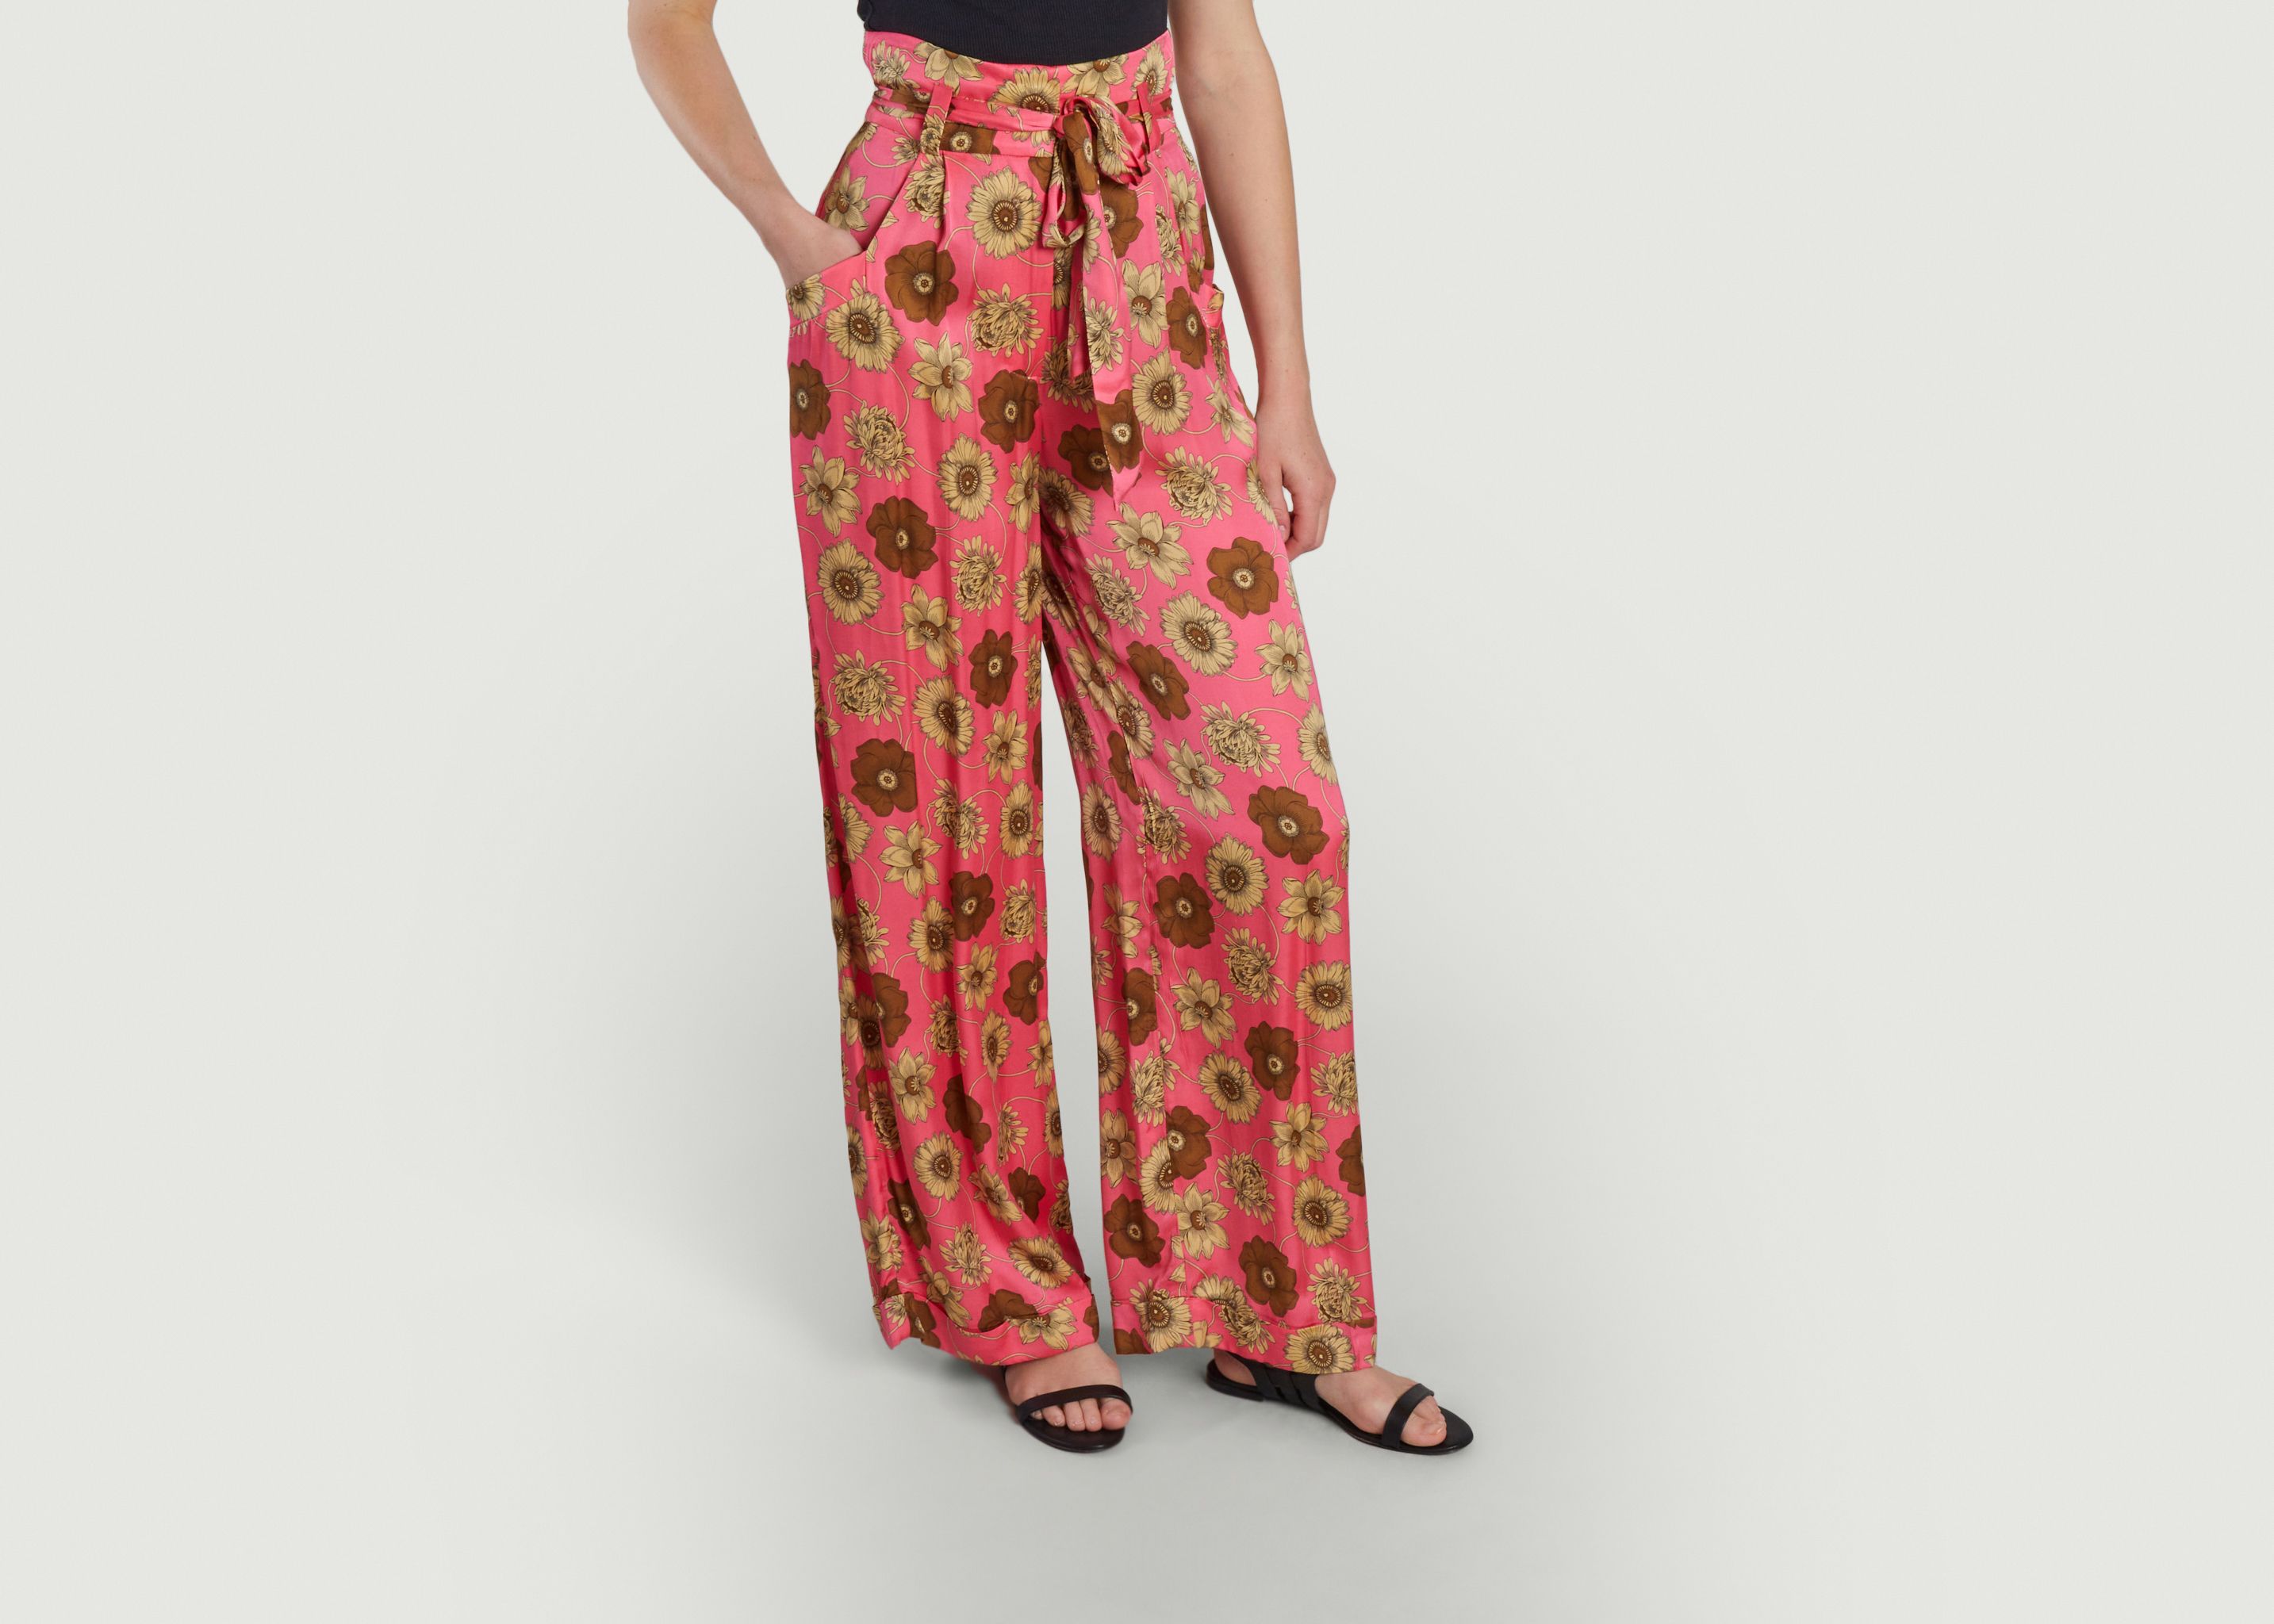 Pyla floral print wide leg pants - Tara Jarmon